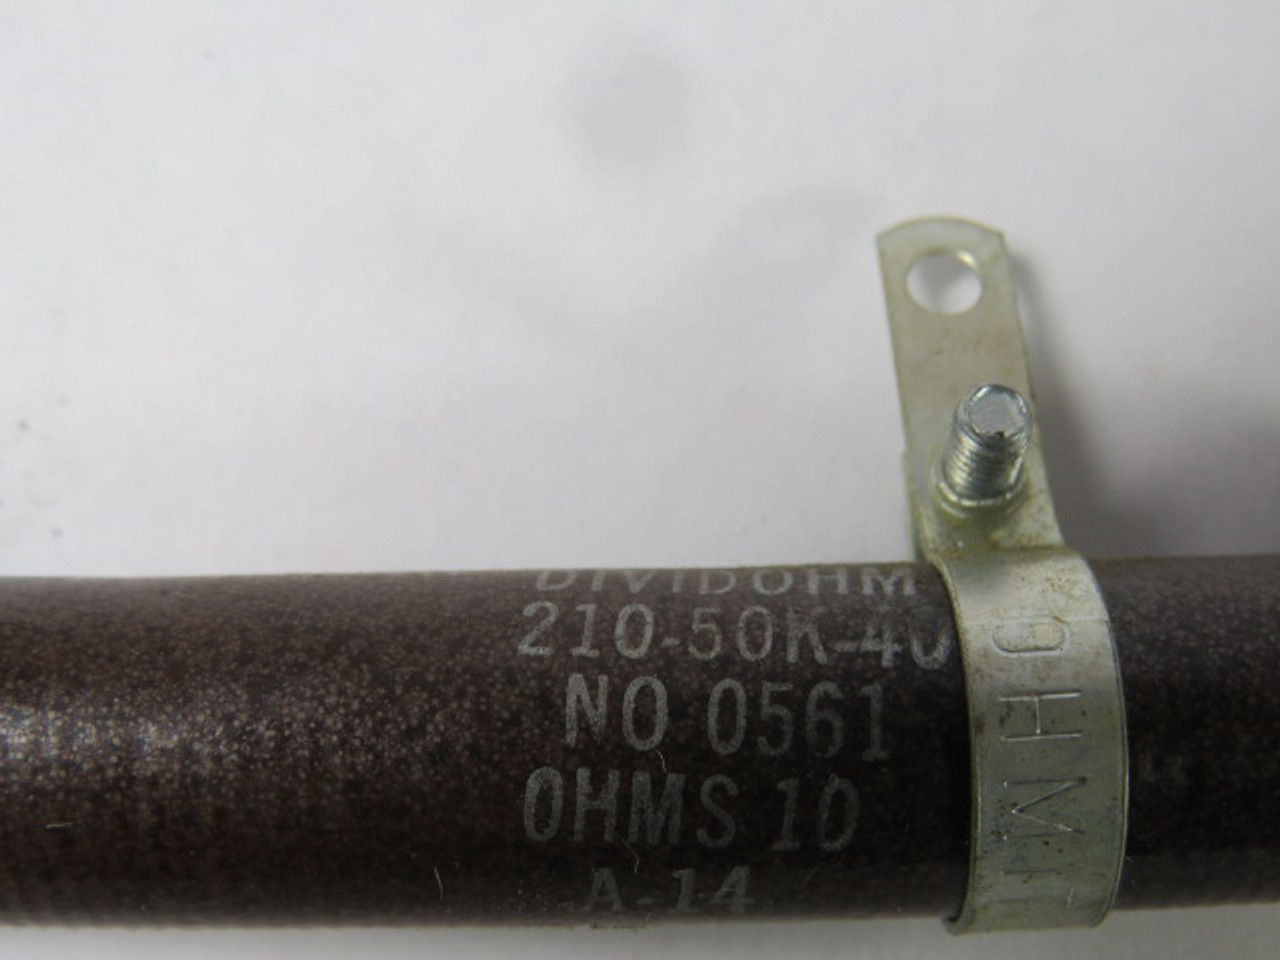 Ohmite 210-50K-40 Wirewound Resistor 1KOHM 50W USED